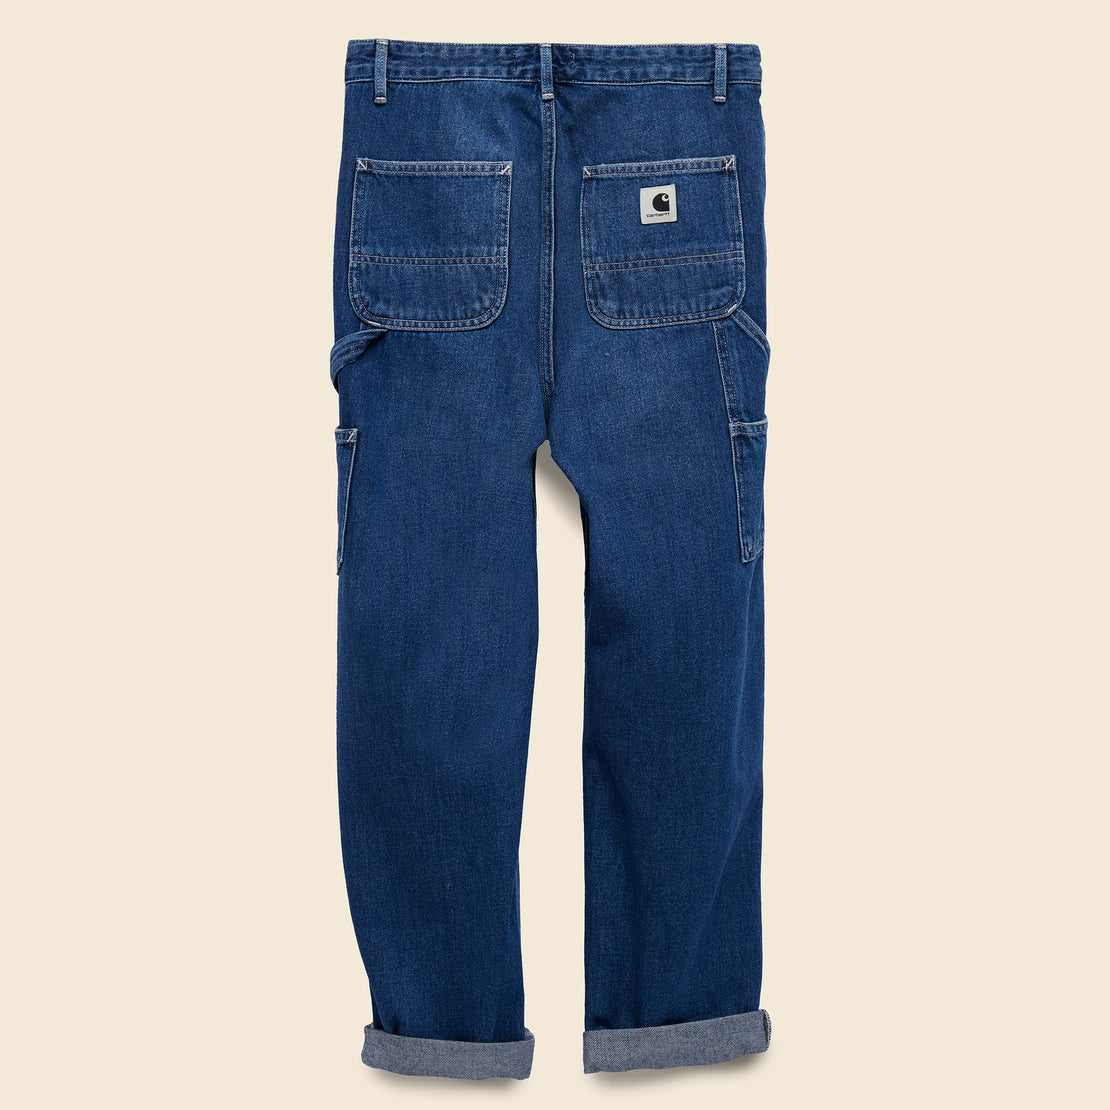 Pierce Pant Straight - Dark Blue - Carhartt WIP - STAG Provisions - W - Pants - Twill